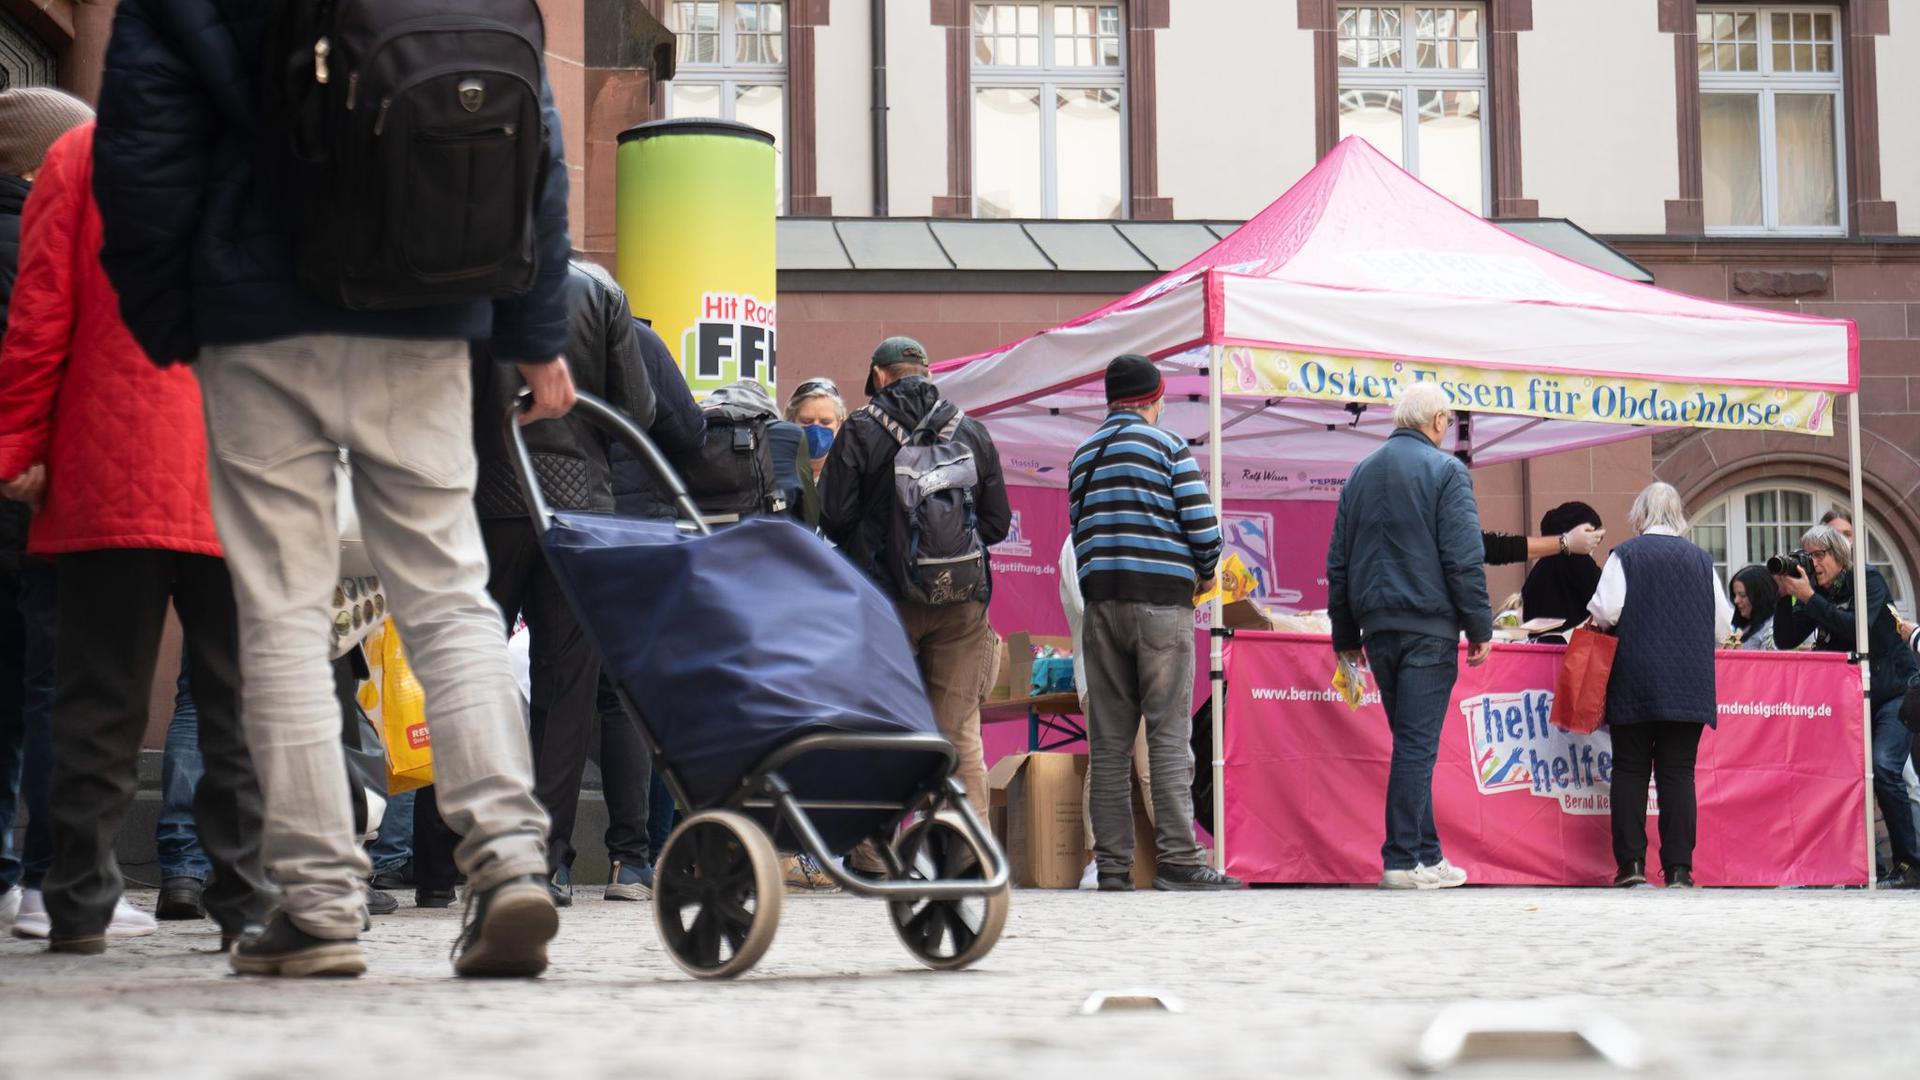 Menschen stehen bei der Ausgabe des Oster-Essens für Obdachlose der Bernd Reisig-Stiftung in Frankfurt an.